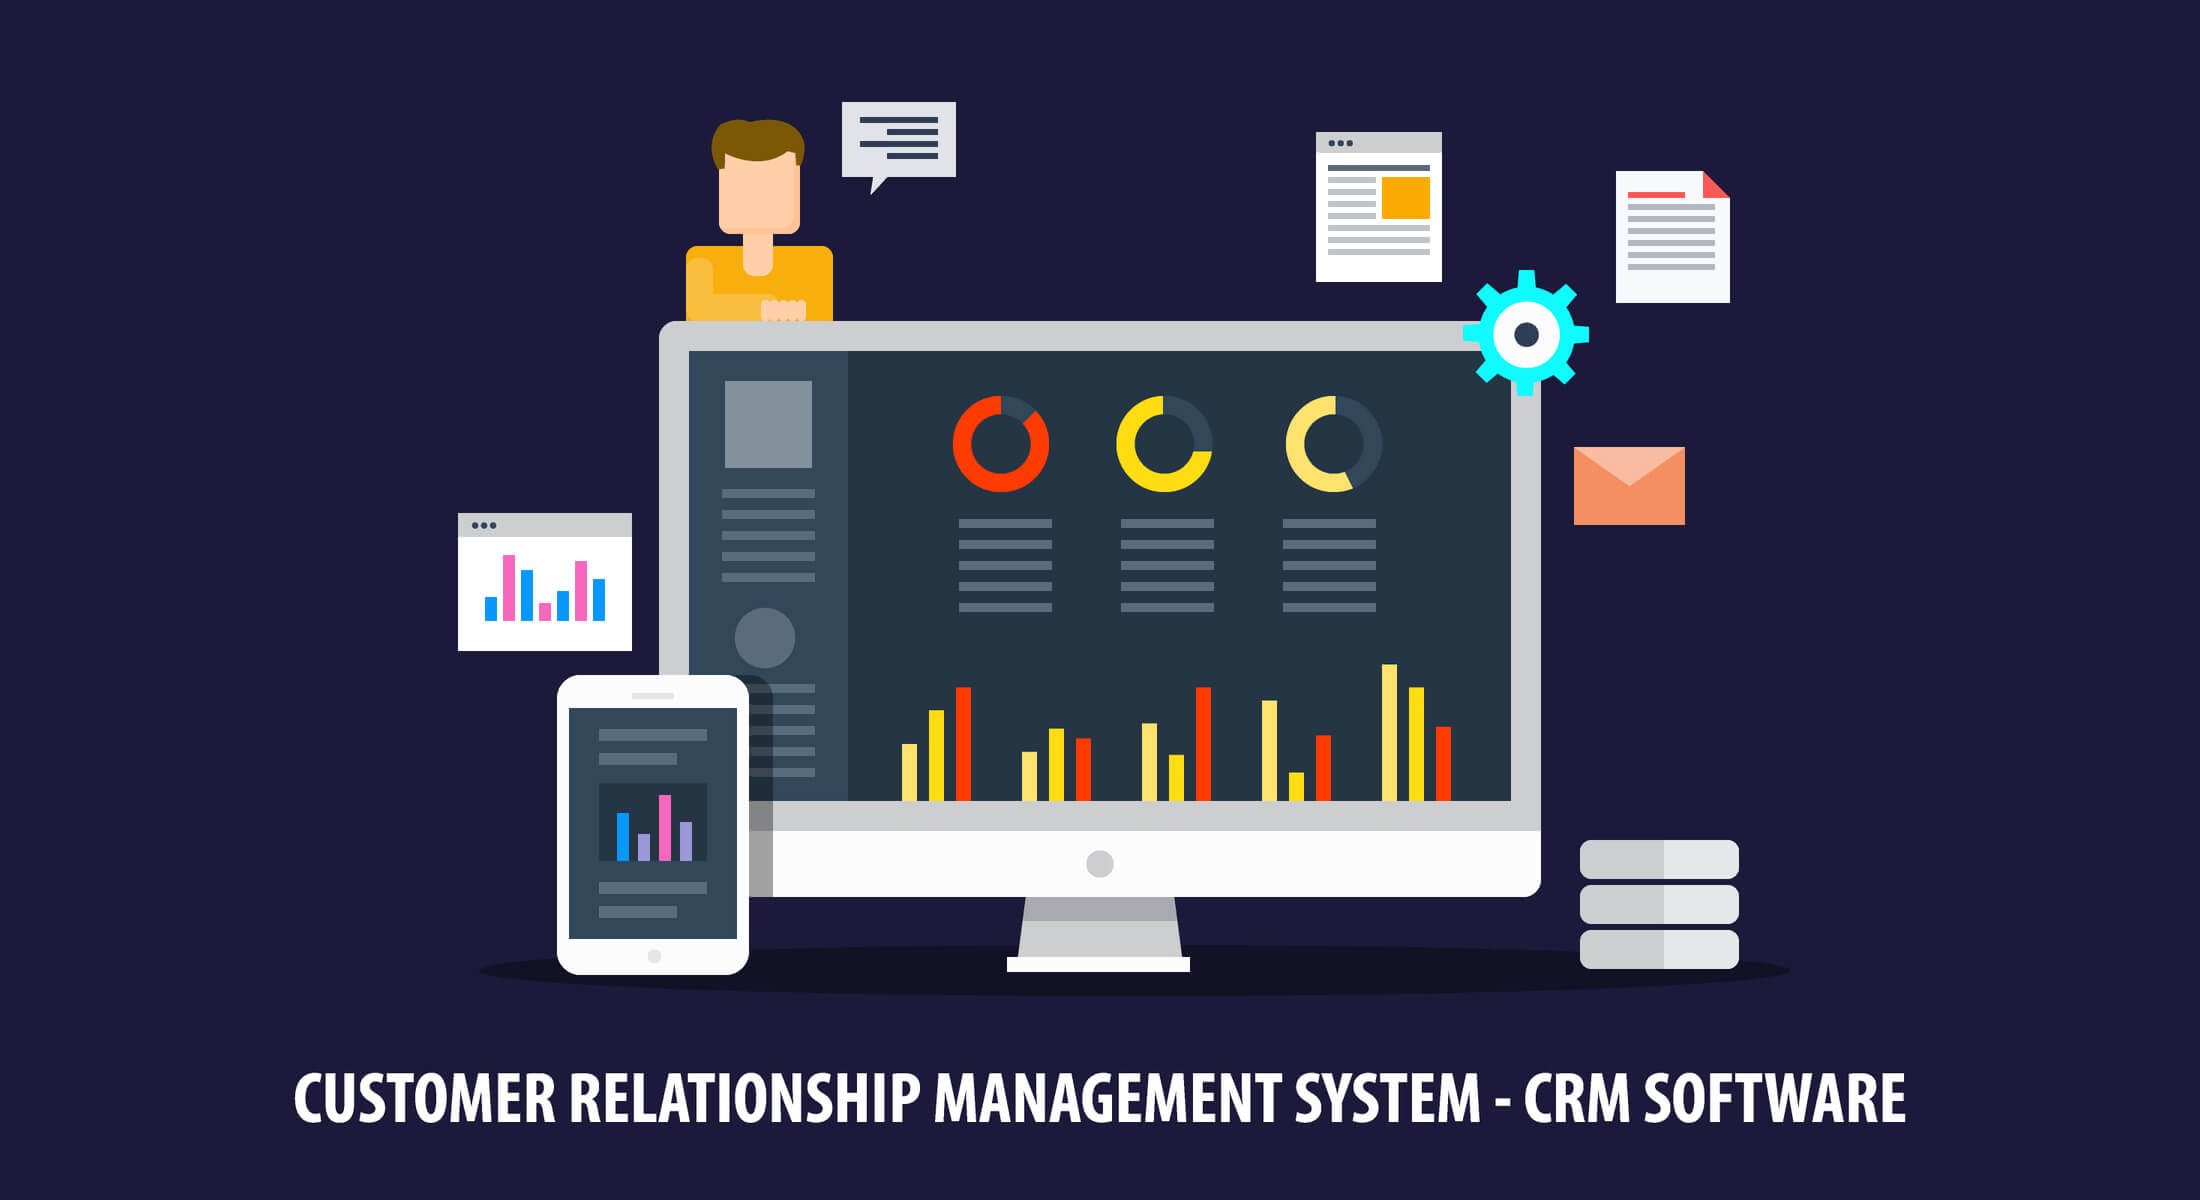 ilustração do sistema CRM como exemplo de ferramenta de relacionamento usada no maketing de experiencia